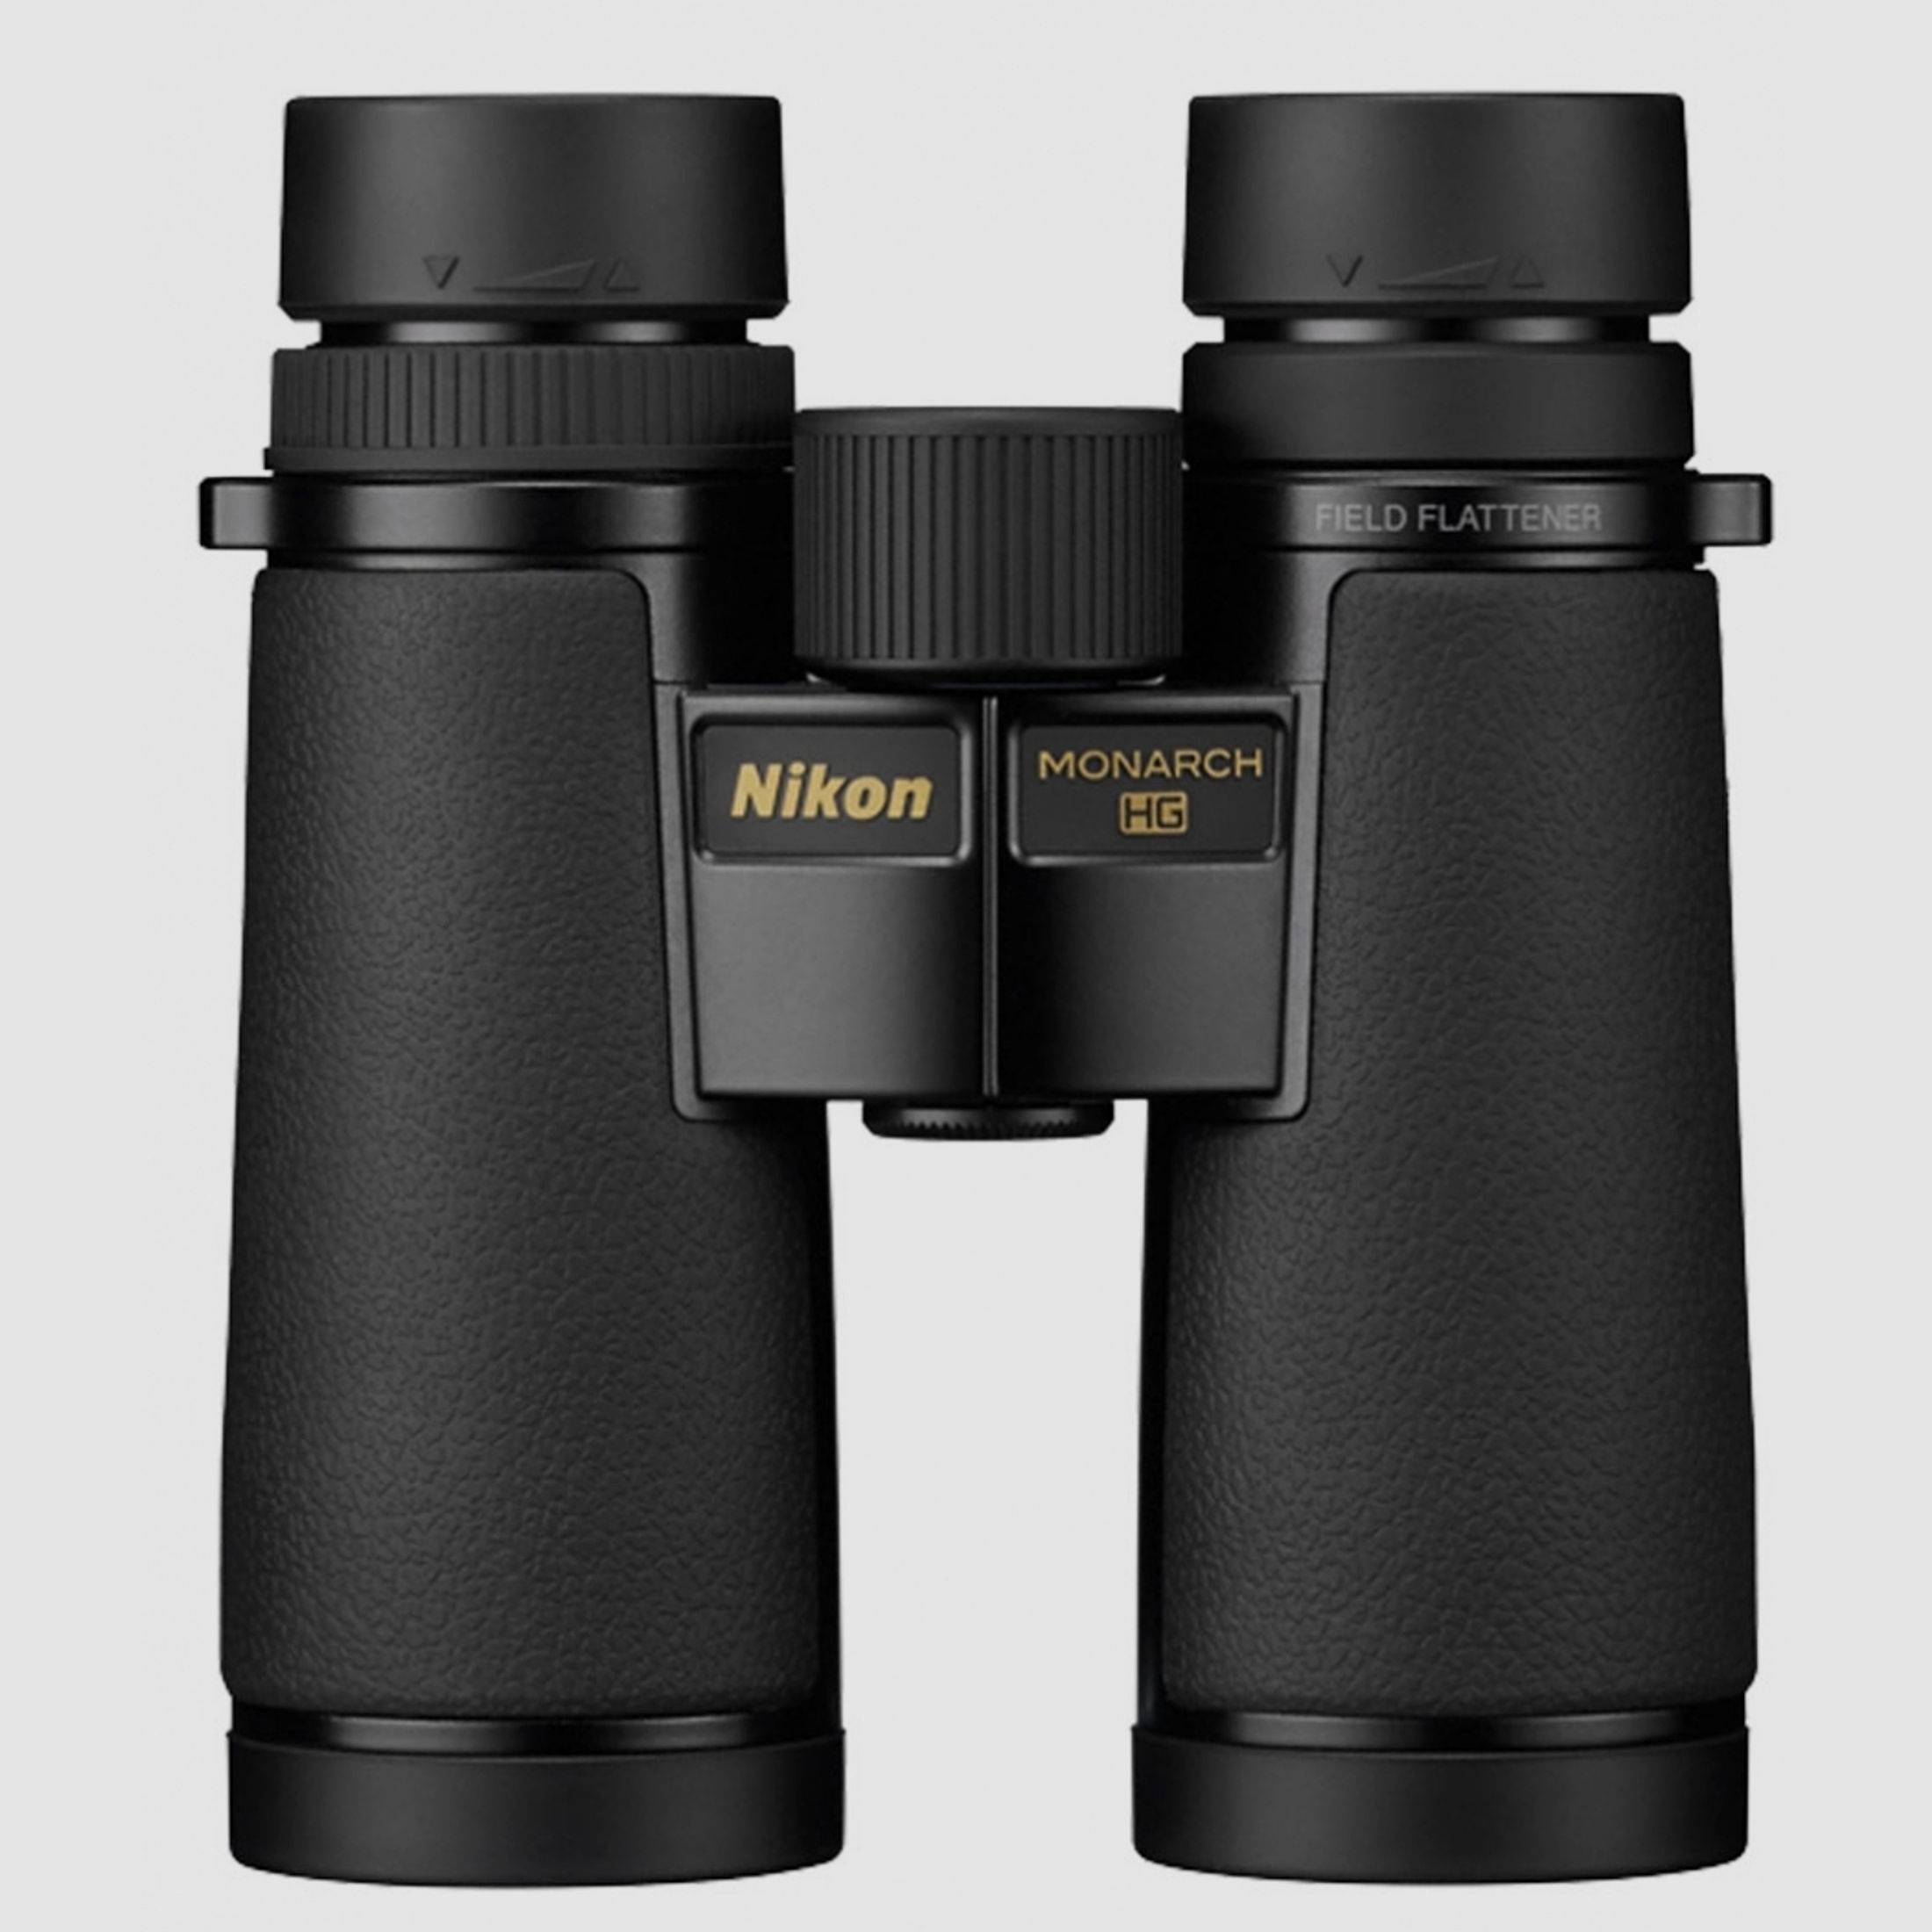 Nikon Nikon MONARCH HG 10x42 -47,40€ 5% Fernglas Rabatt 900,60 Effektivpreis